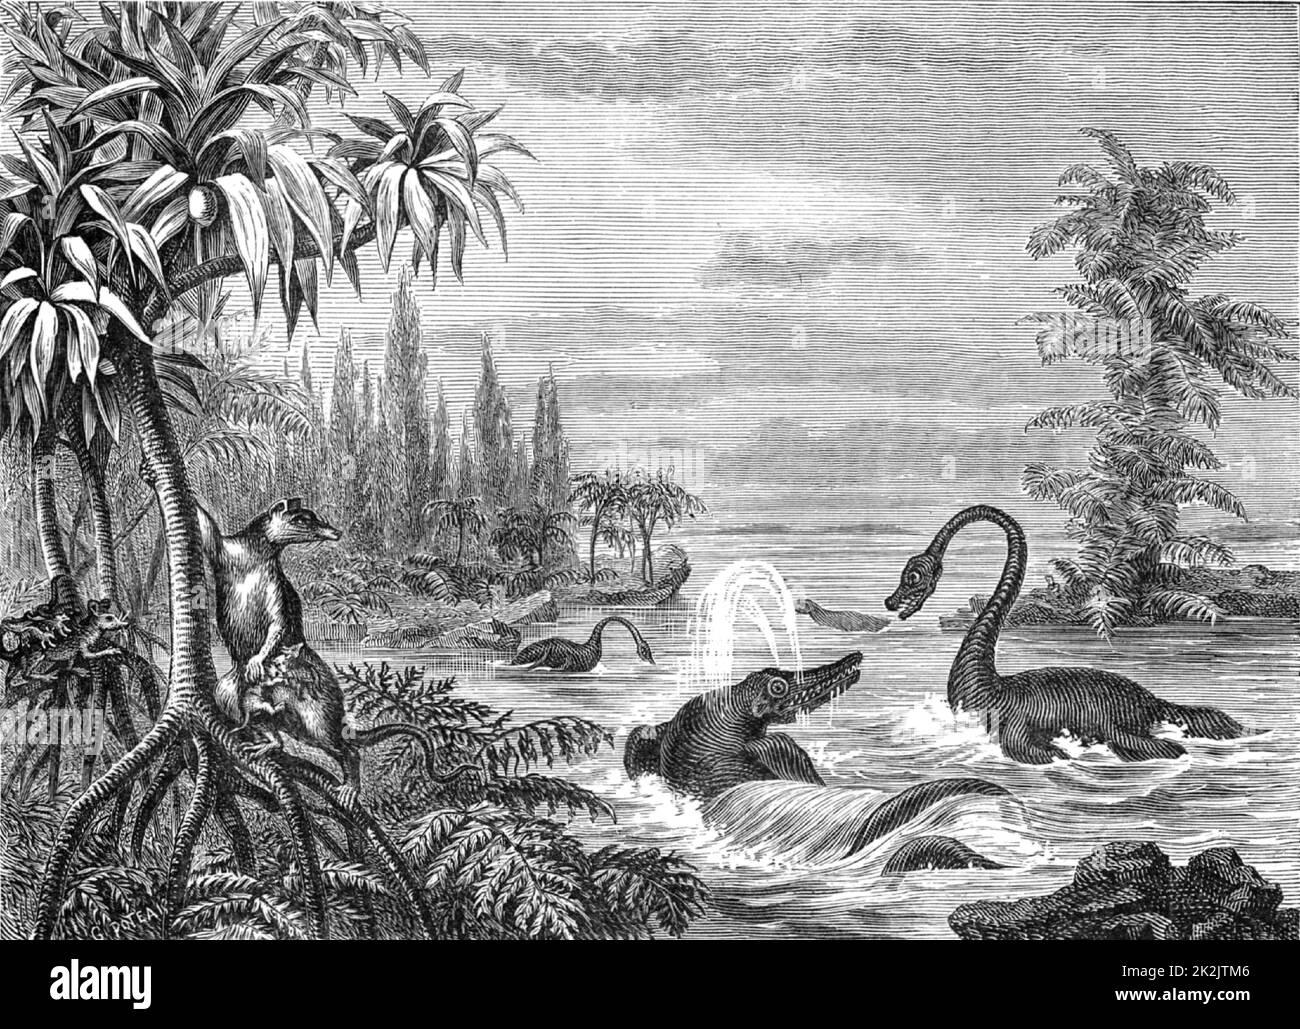 Scène durant la période de l'Oolite inférieure montrant des reconstructions d'Ichthyosaurus, de Plesiosaurus et d'un marsupial. De 'The Popular Encyclopedia' (Londres, 1888). Gravure. Banque D'Images